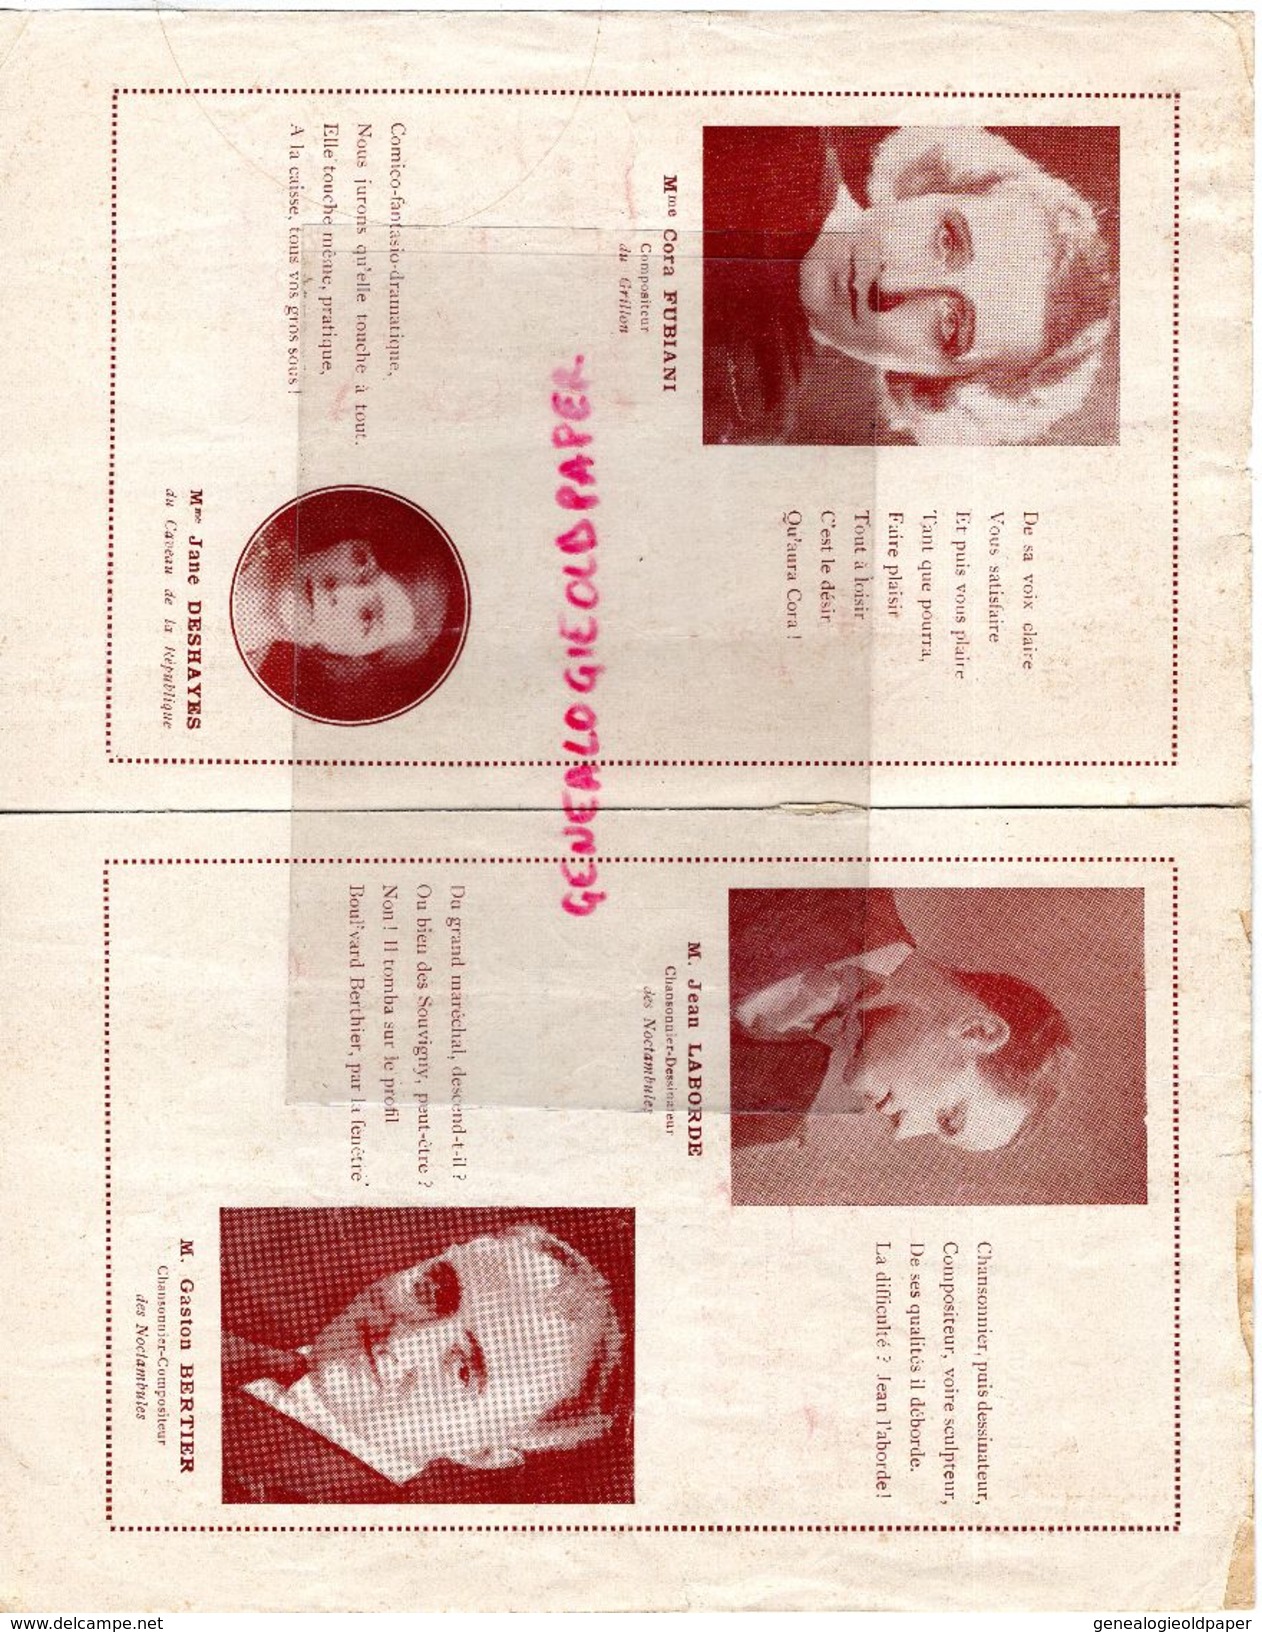 16- CONFOLENS-RARE PROGRAMME CHANSONNIERS MONTMARTRE-SALLES DES FETES 16 -11-1935-MARCEL LUCAS-JEAN LABORDE-GOULEBENEZE- - Programs